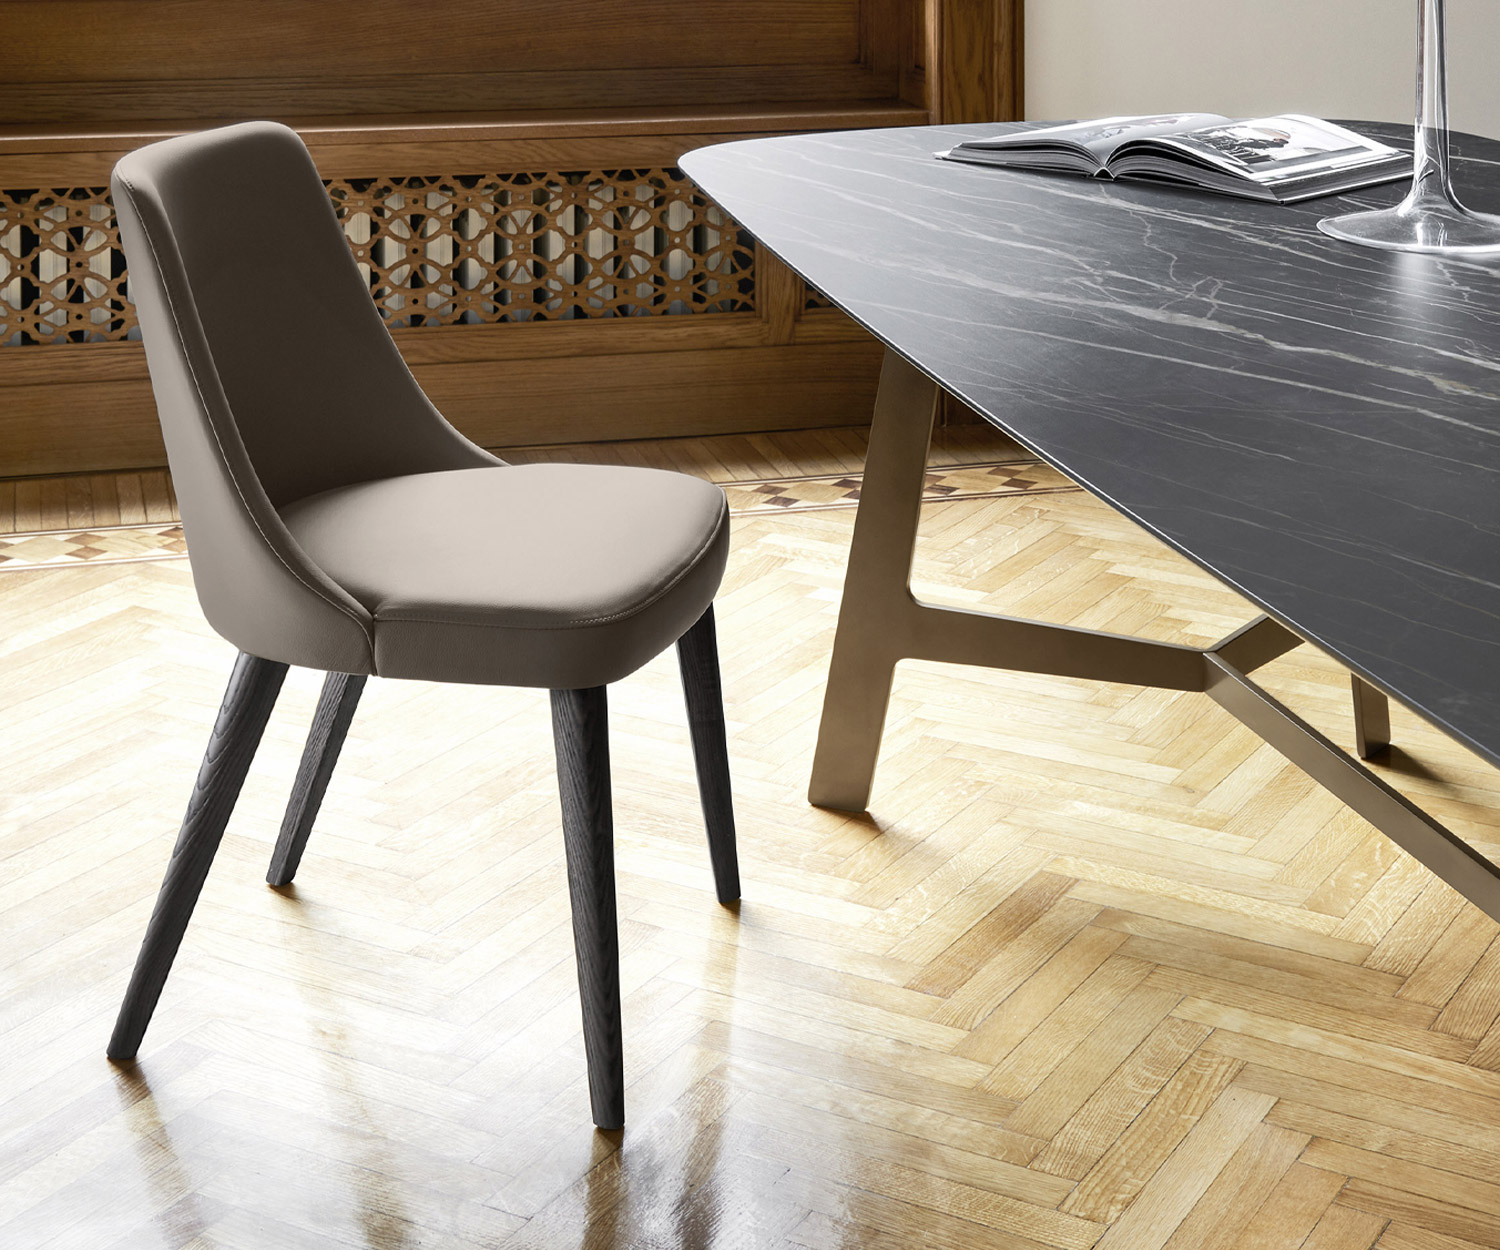 Esclusiva sedia da pranzo Livitalia Design Eva con rivestimento in ecopelle beige